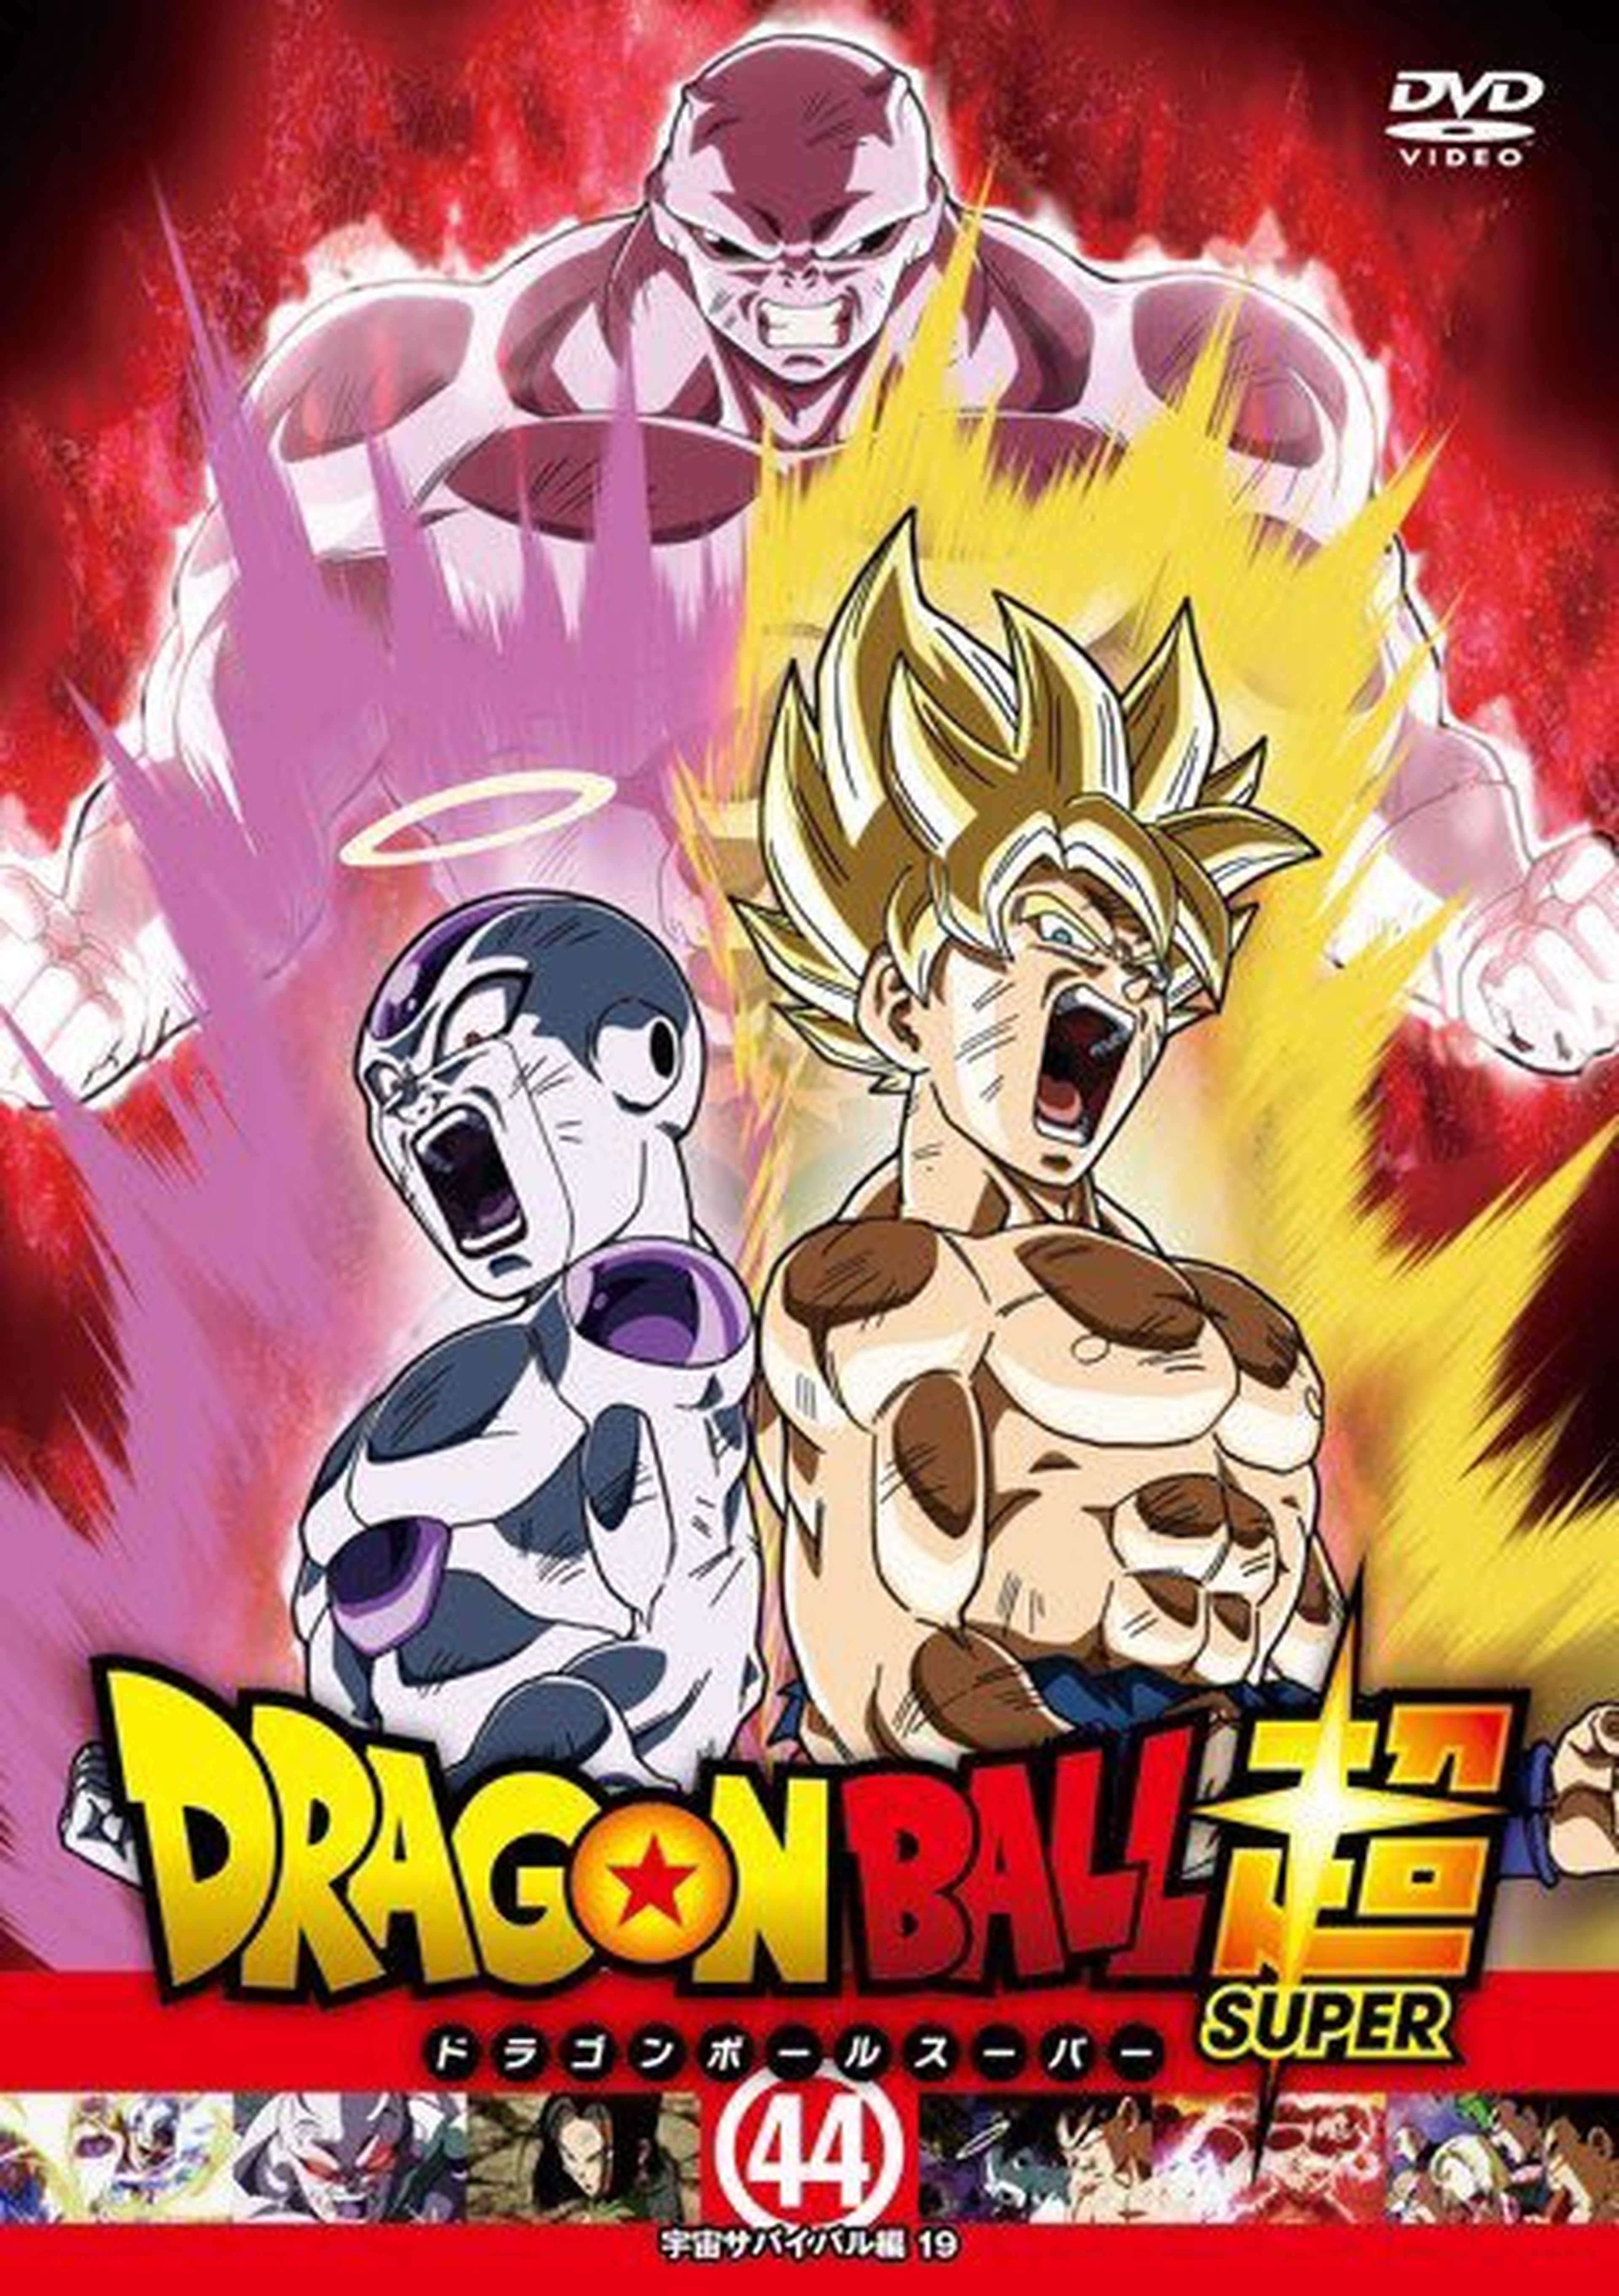 El DVD de Dragon ball Heroes 2022 (Caratula) by DragonGotico423 on